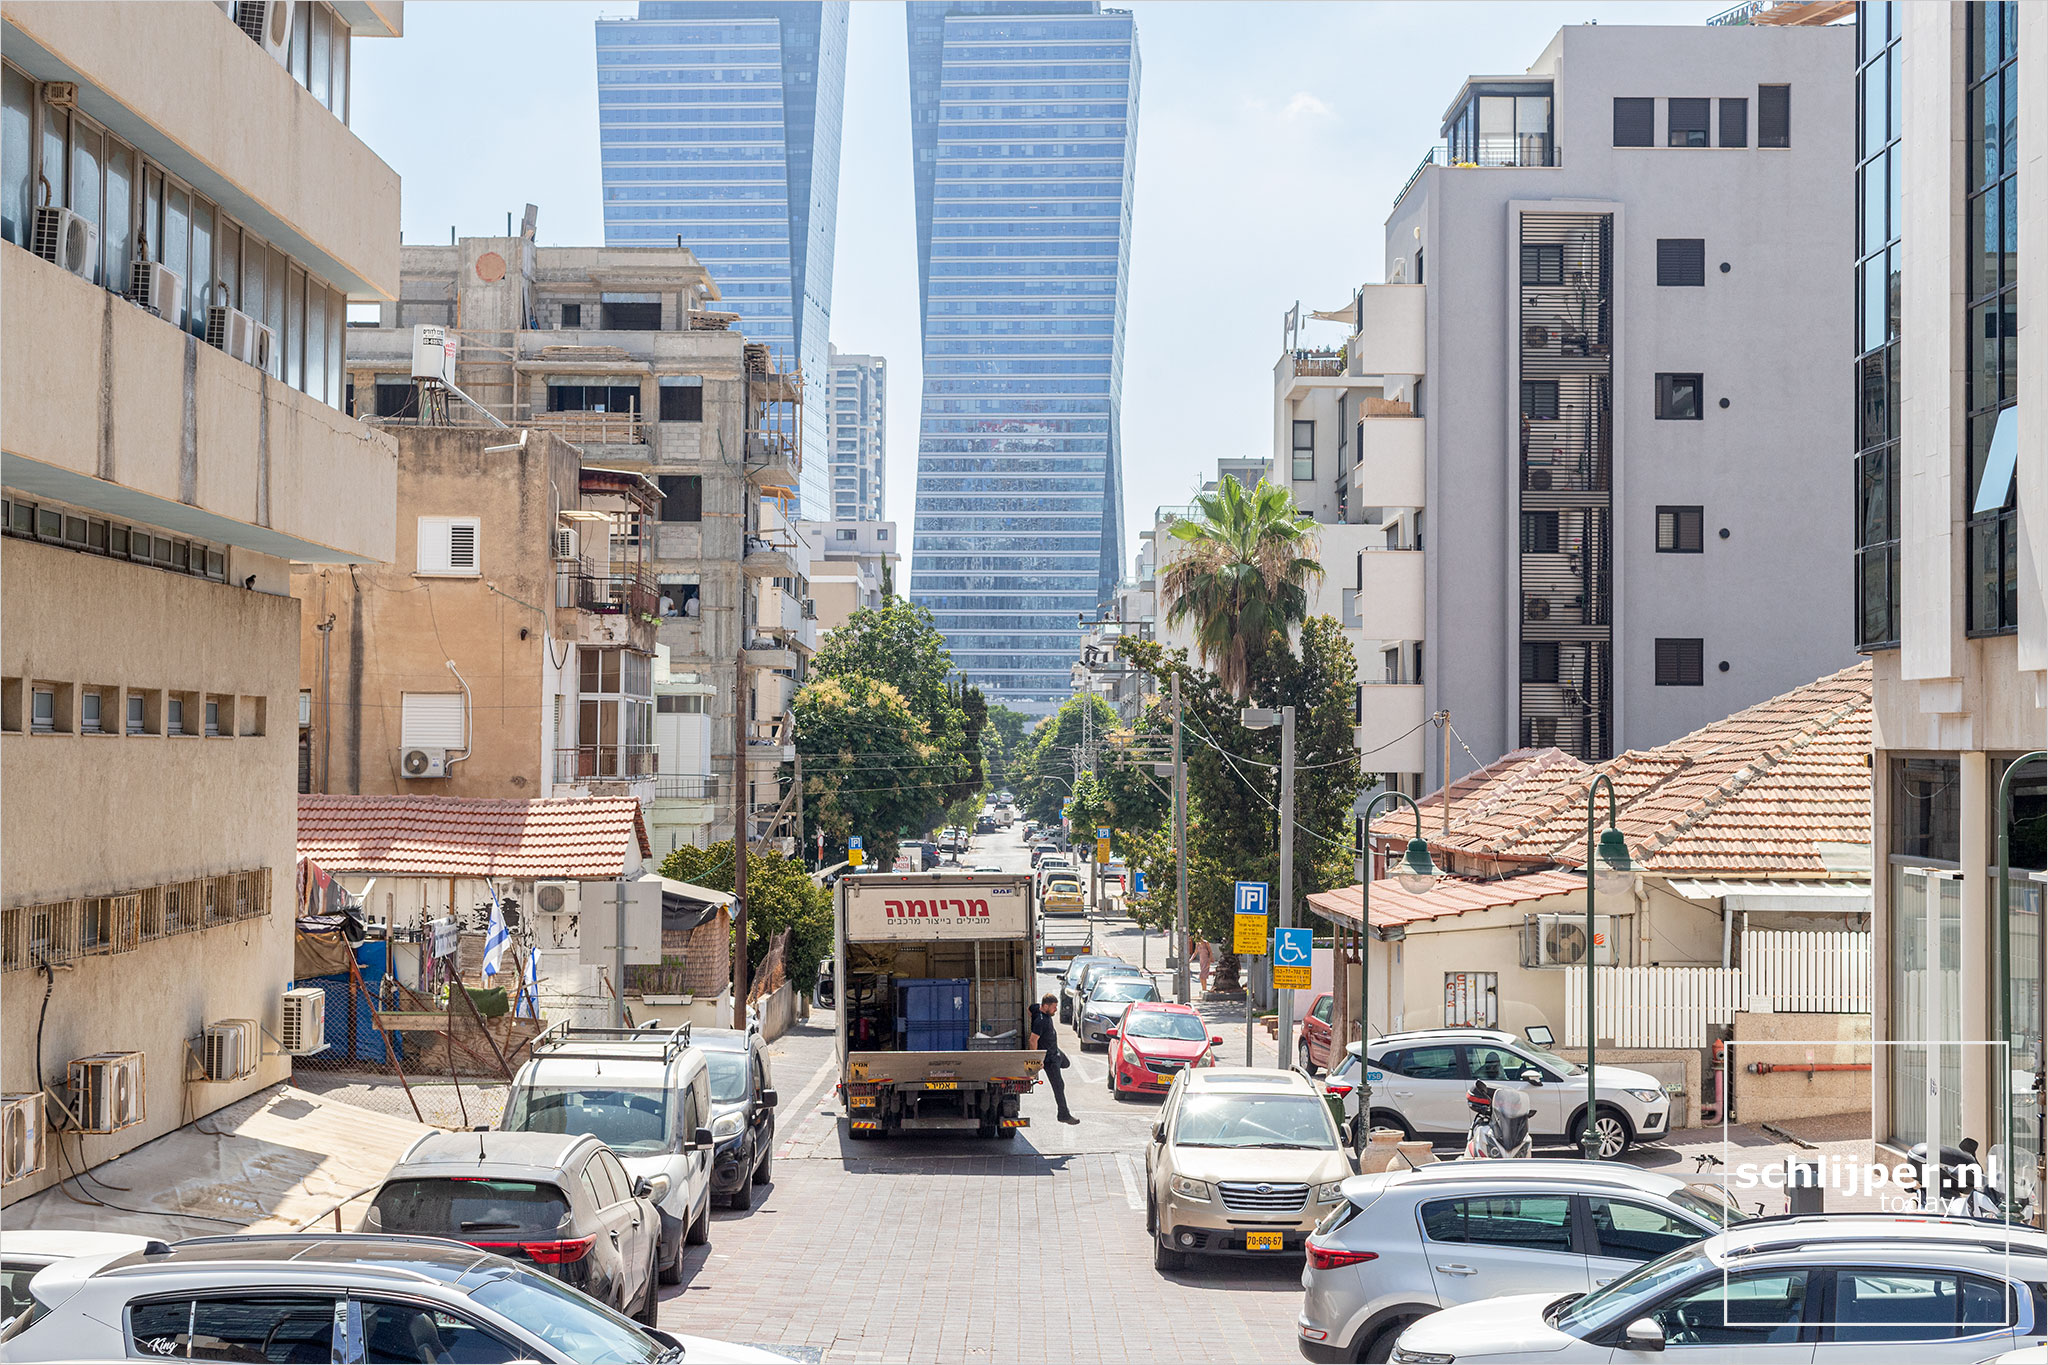 Israel, Tel Aviv, 5 juli 2022